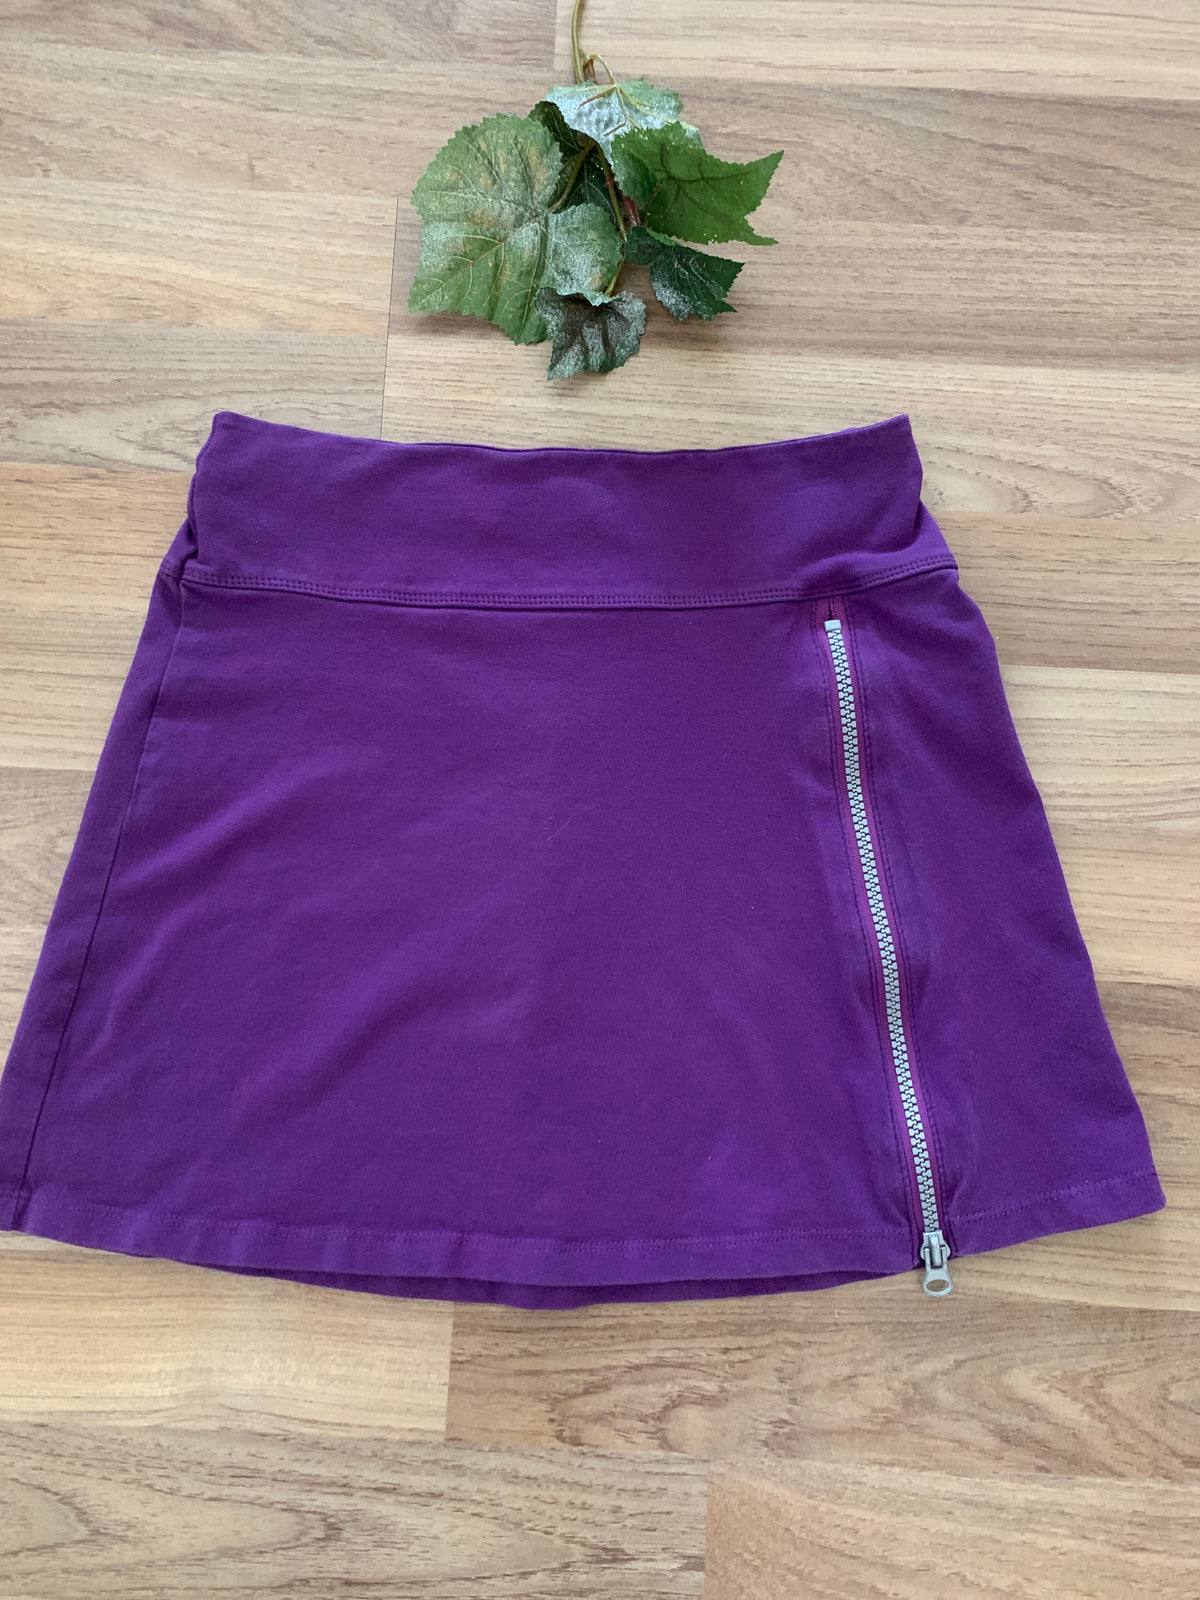 Skirt (Girls Size 8)